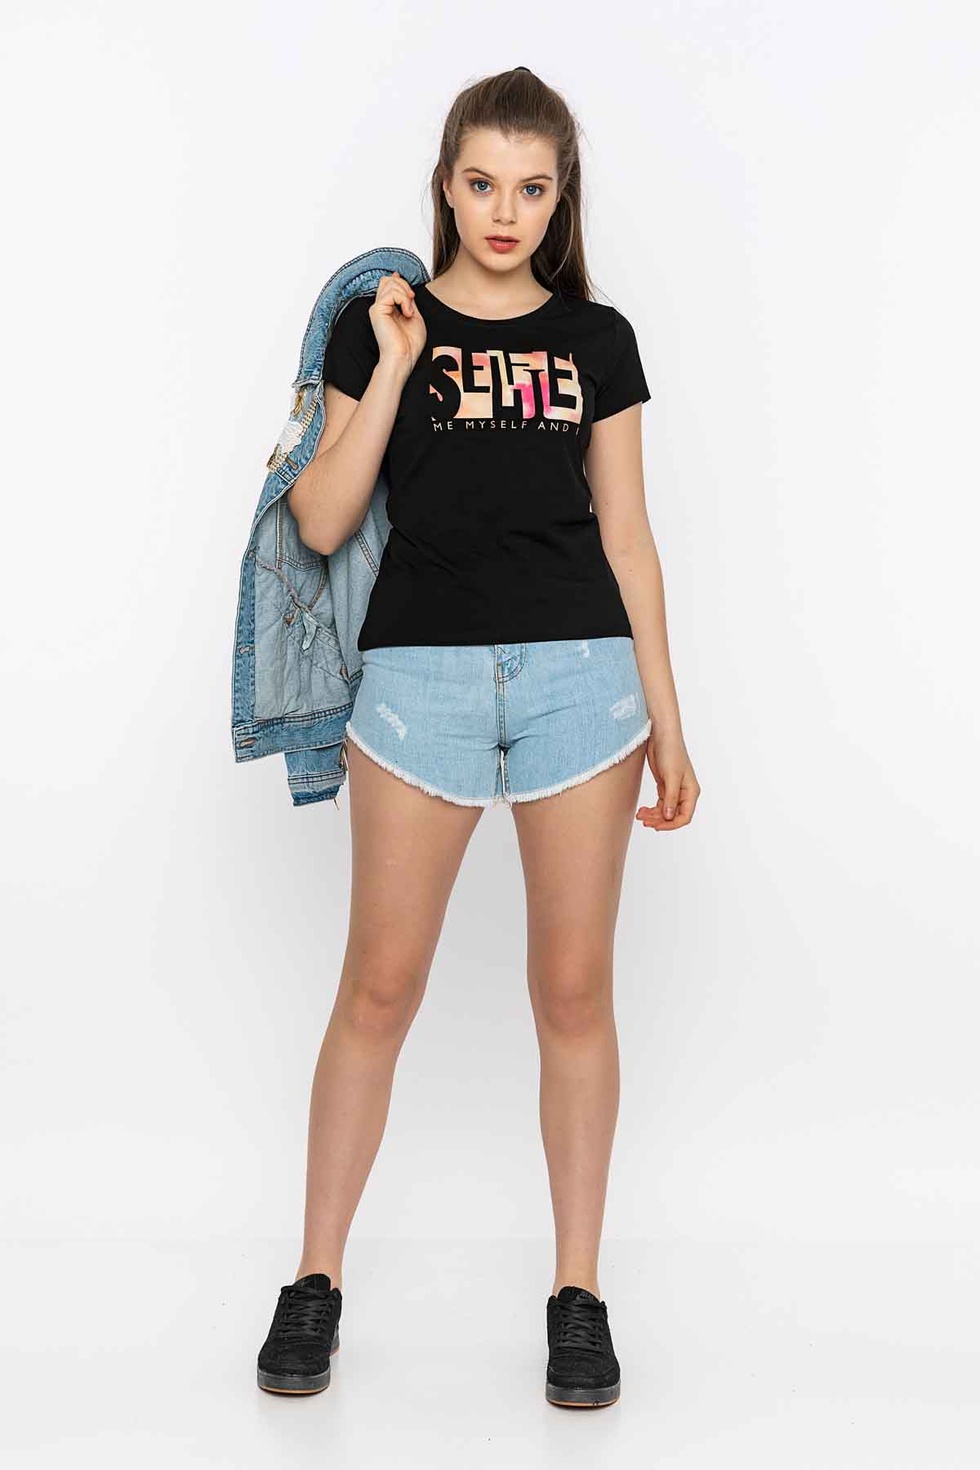 Selfie Renkli Reflektör Baskılı T-Shirt